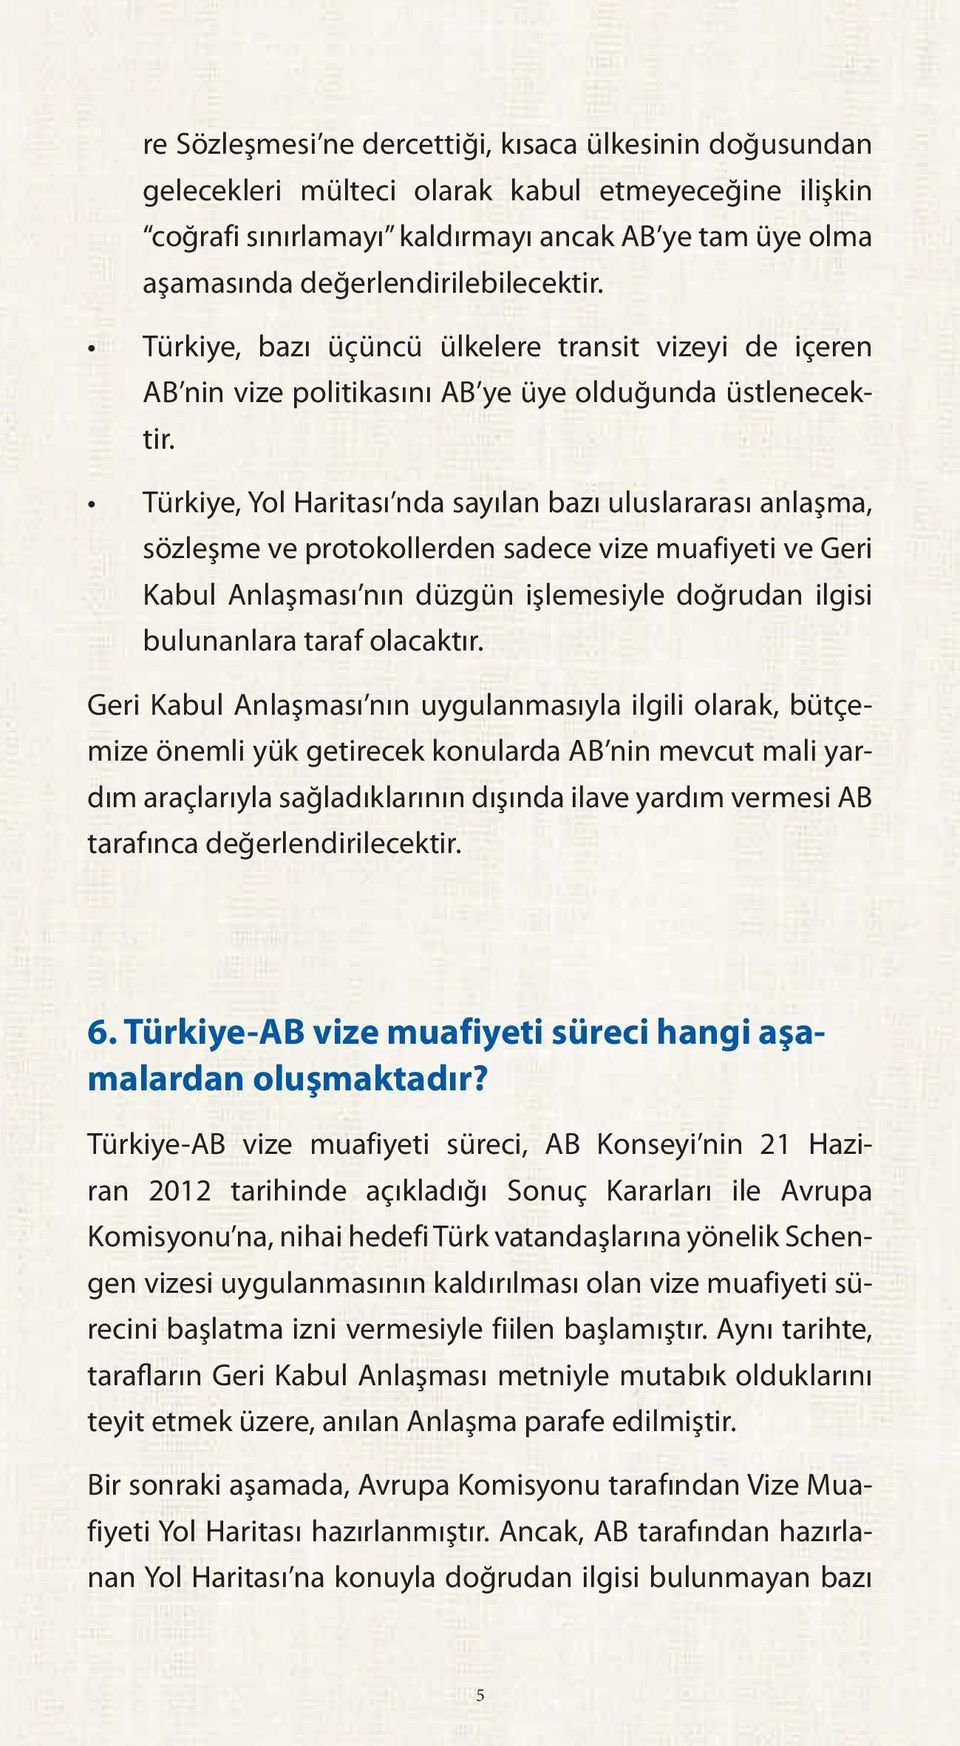 Türkiye, Yol Haritası nda sayılan bazı uluslararası anlaşma, sözleşme ve protokollerden sadece vize muafiyeti ve Geri Kabul Anlaşması nın düzgün işlemesiyle doğrudan ilgisi bulunanlara taraf